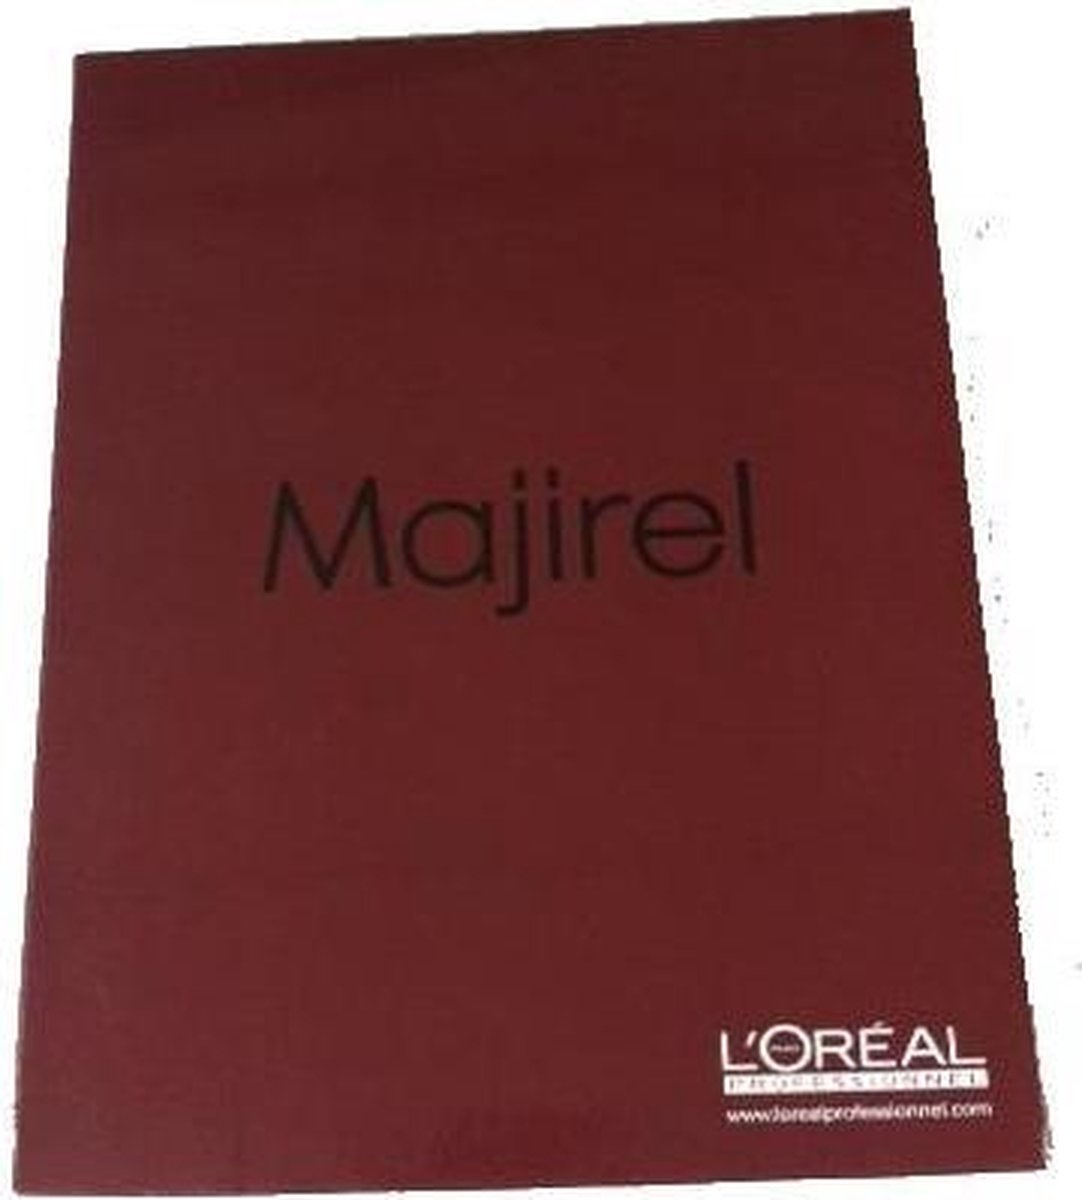 loreal L'Oreal Kleurenboek Majirel, licht beschadigd